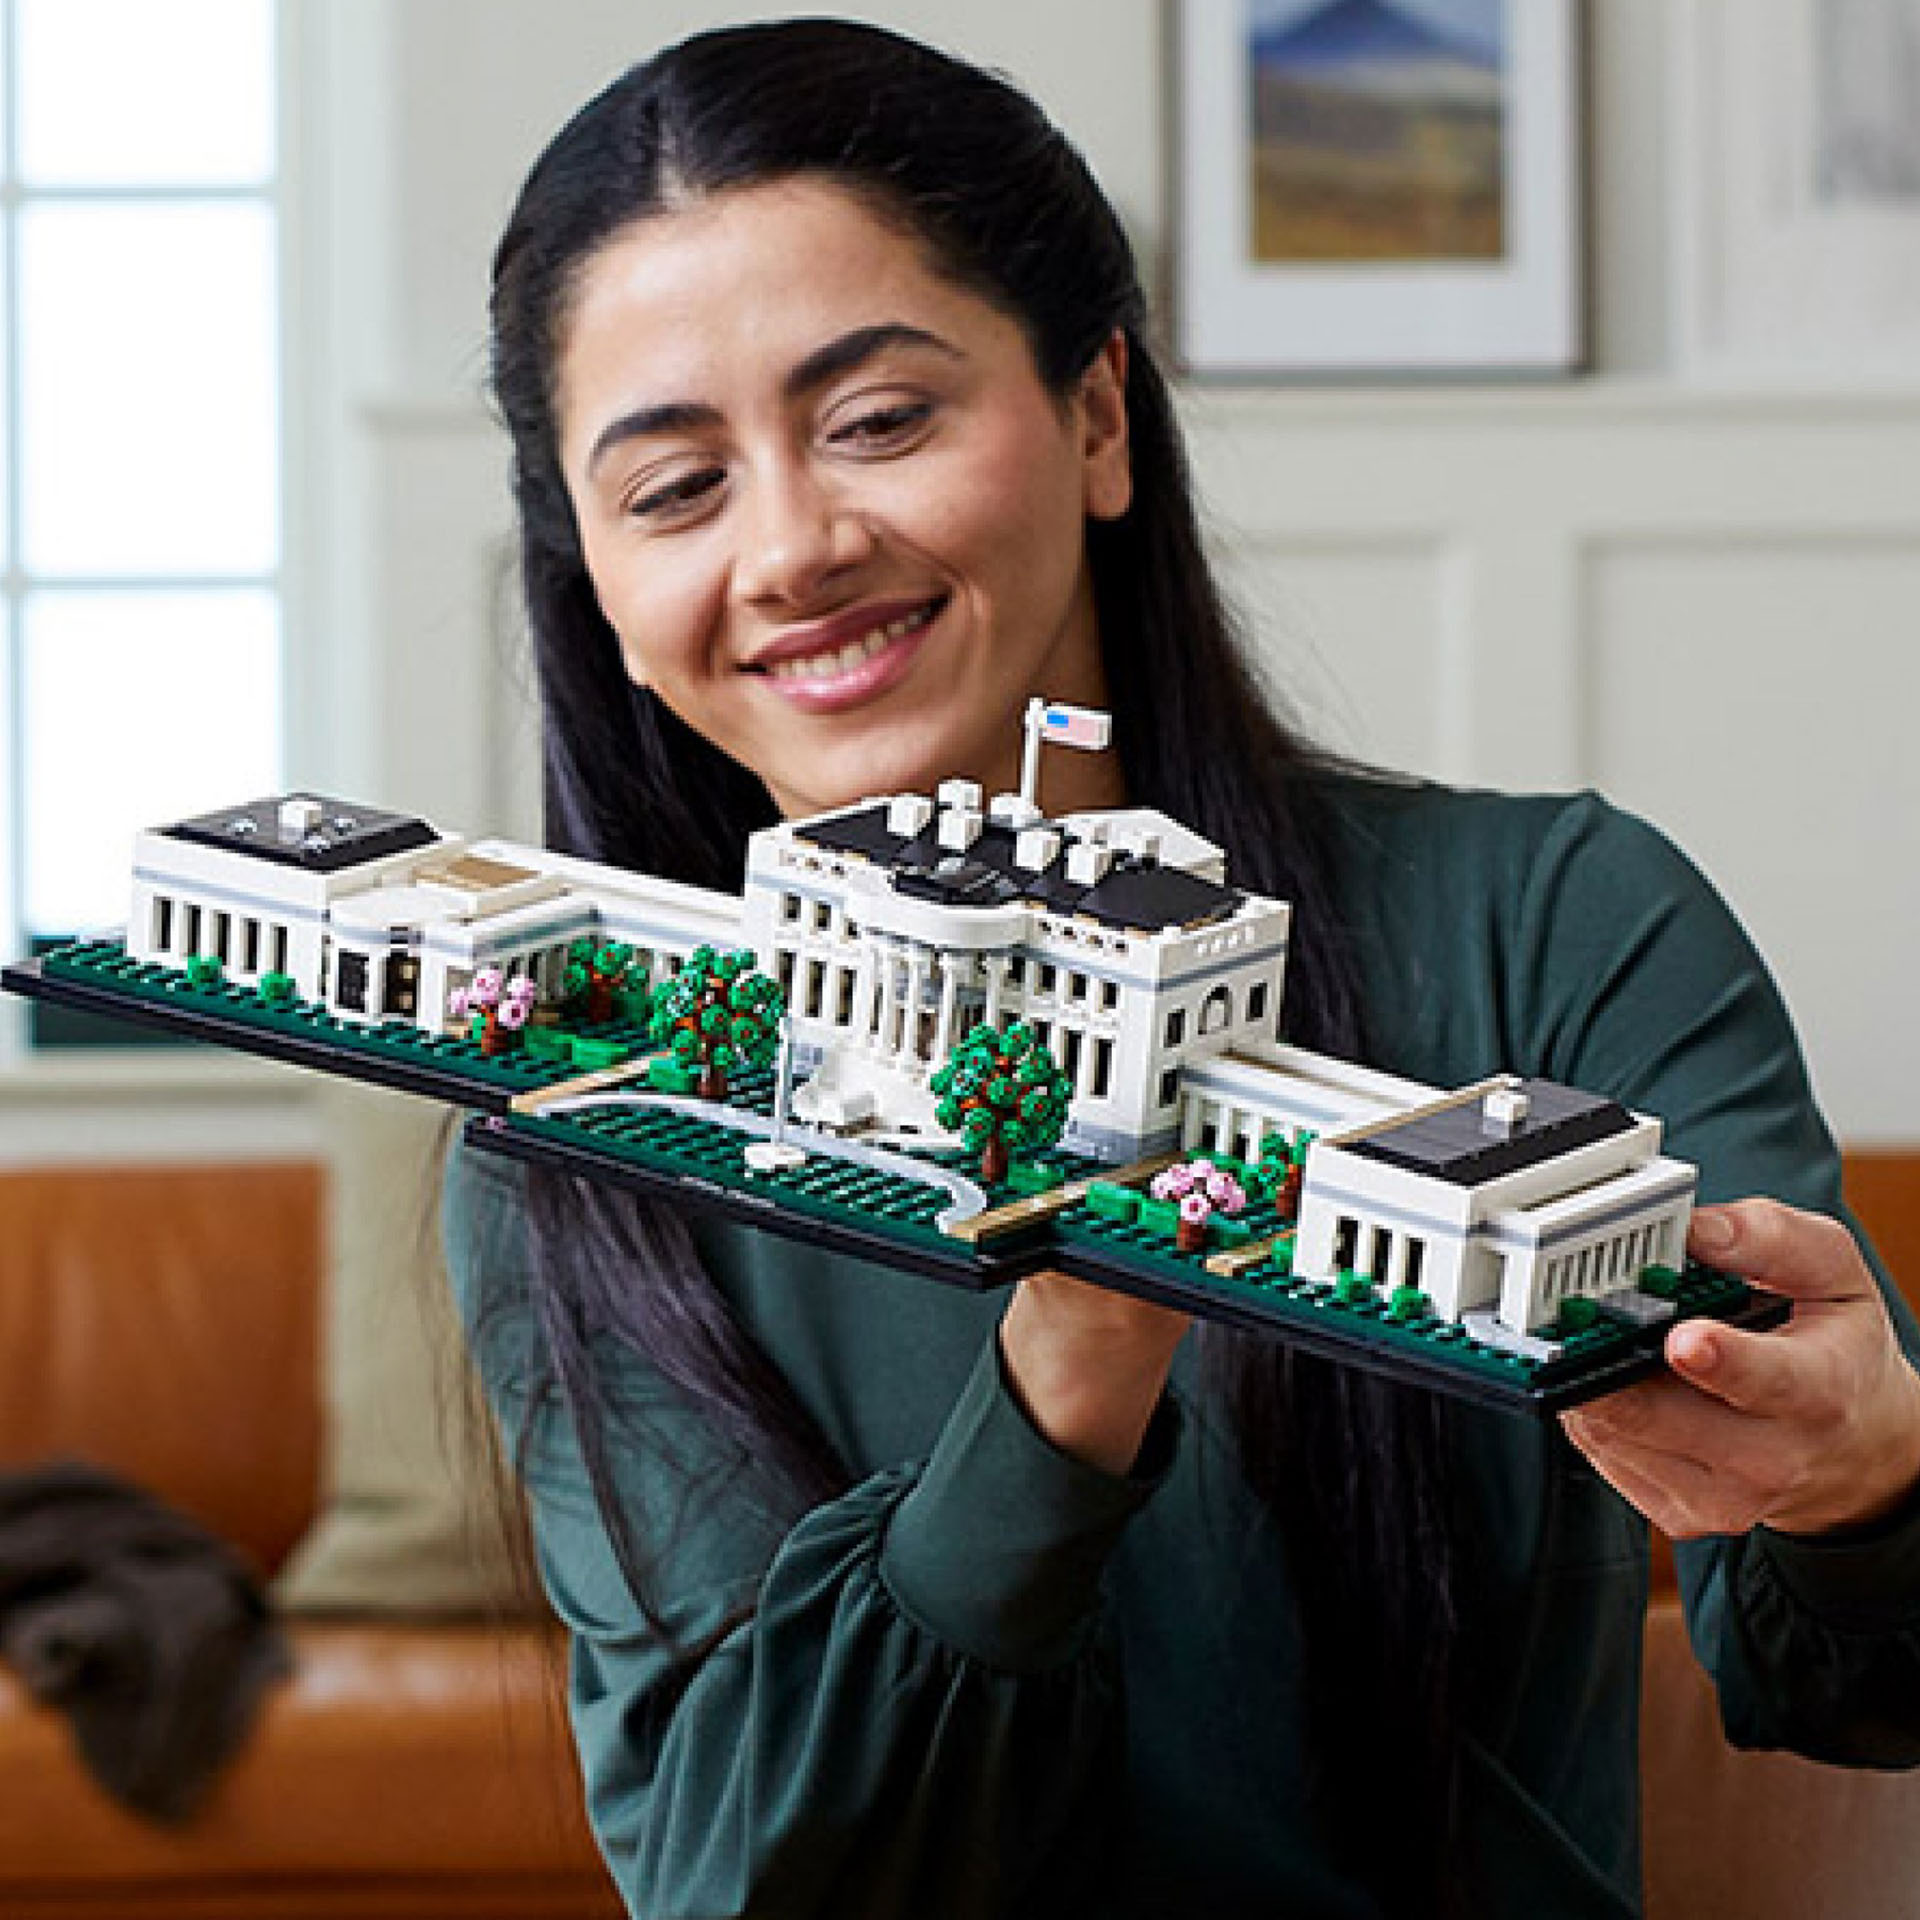 LEGO Architecture La Casa Bianca, Collezione Monumenti per Adulti, Idea Regalo d 21054, , large